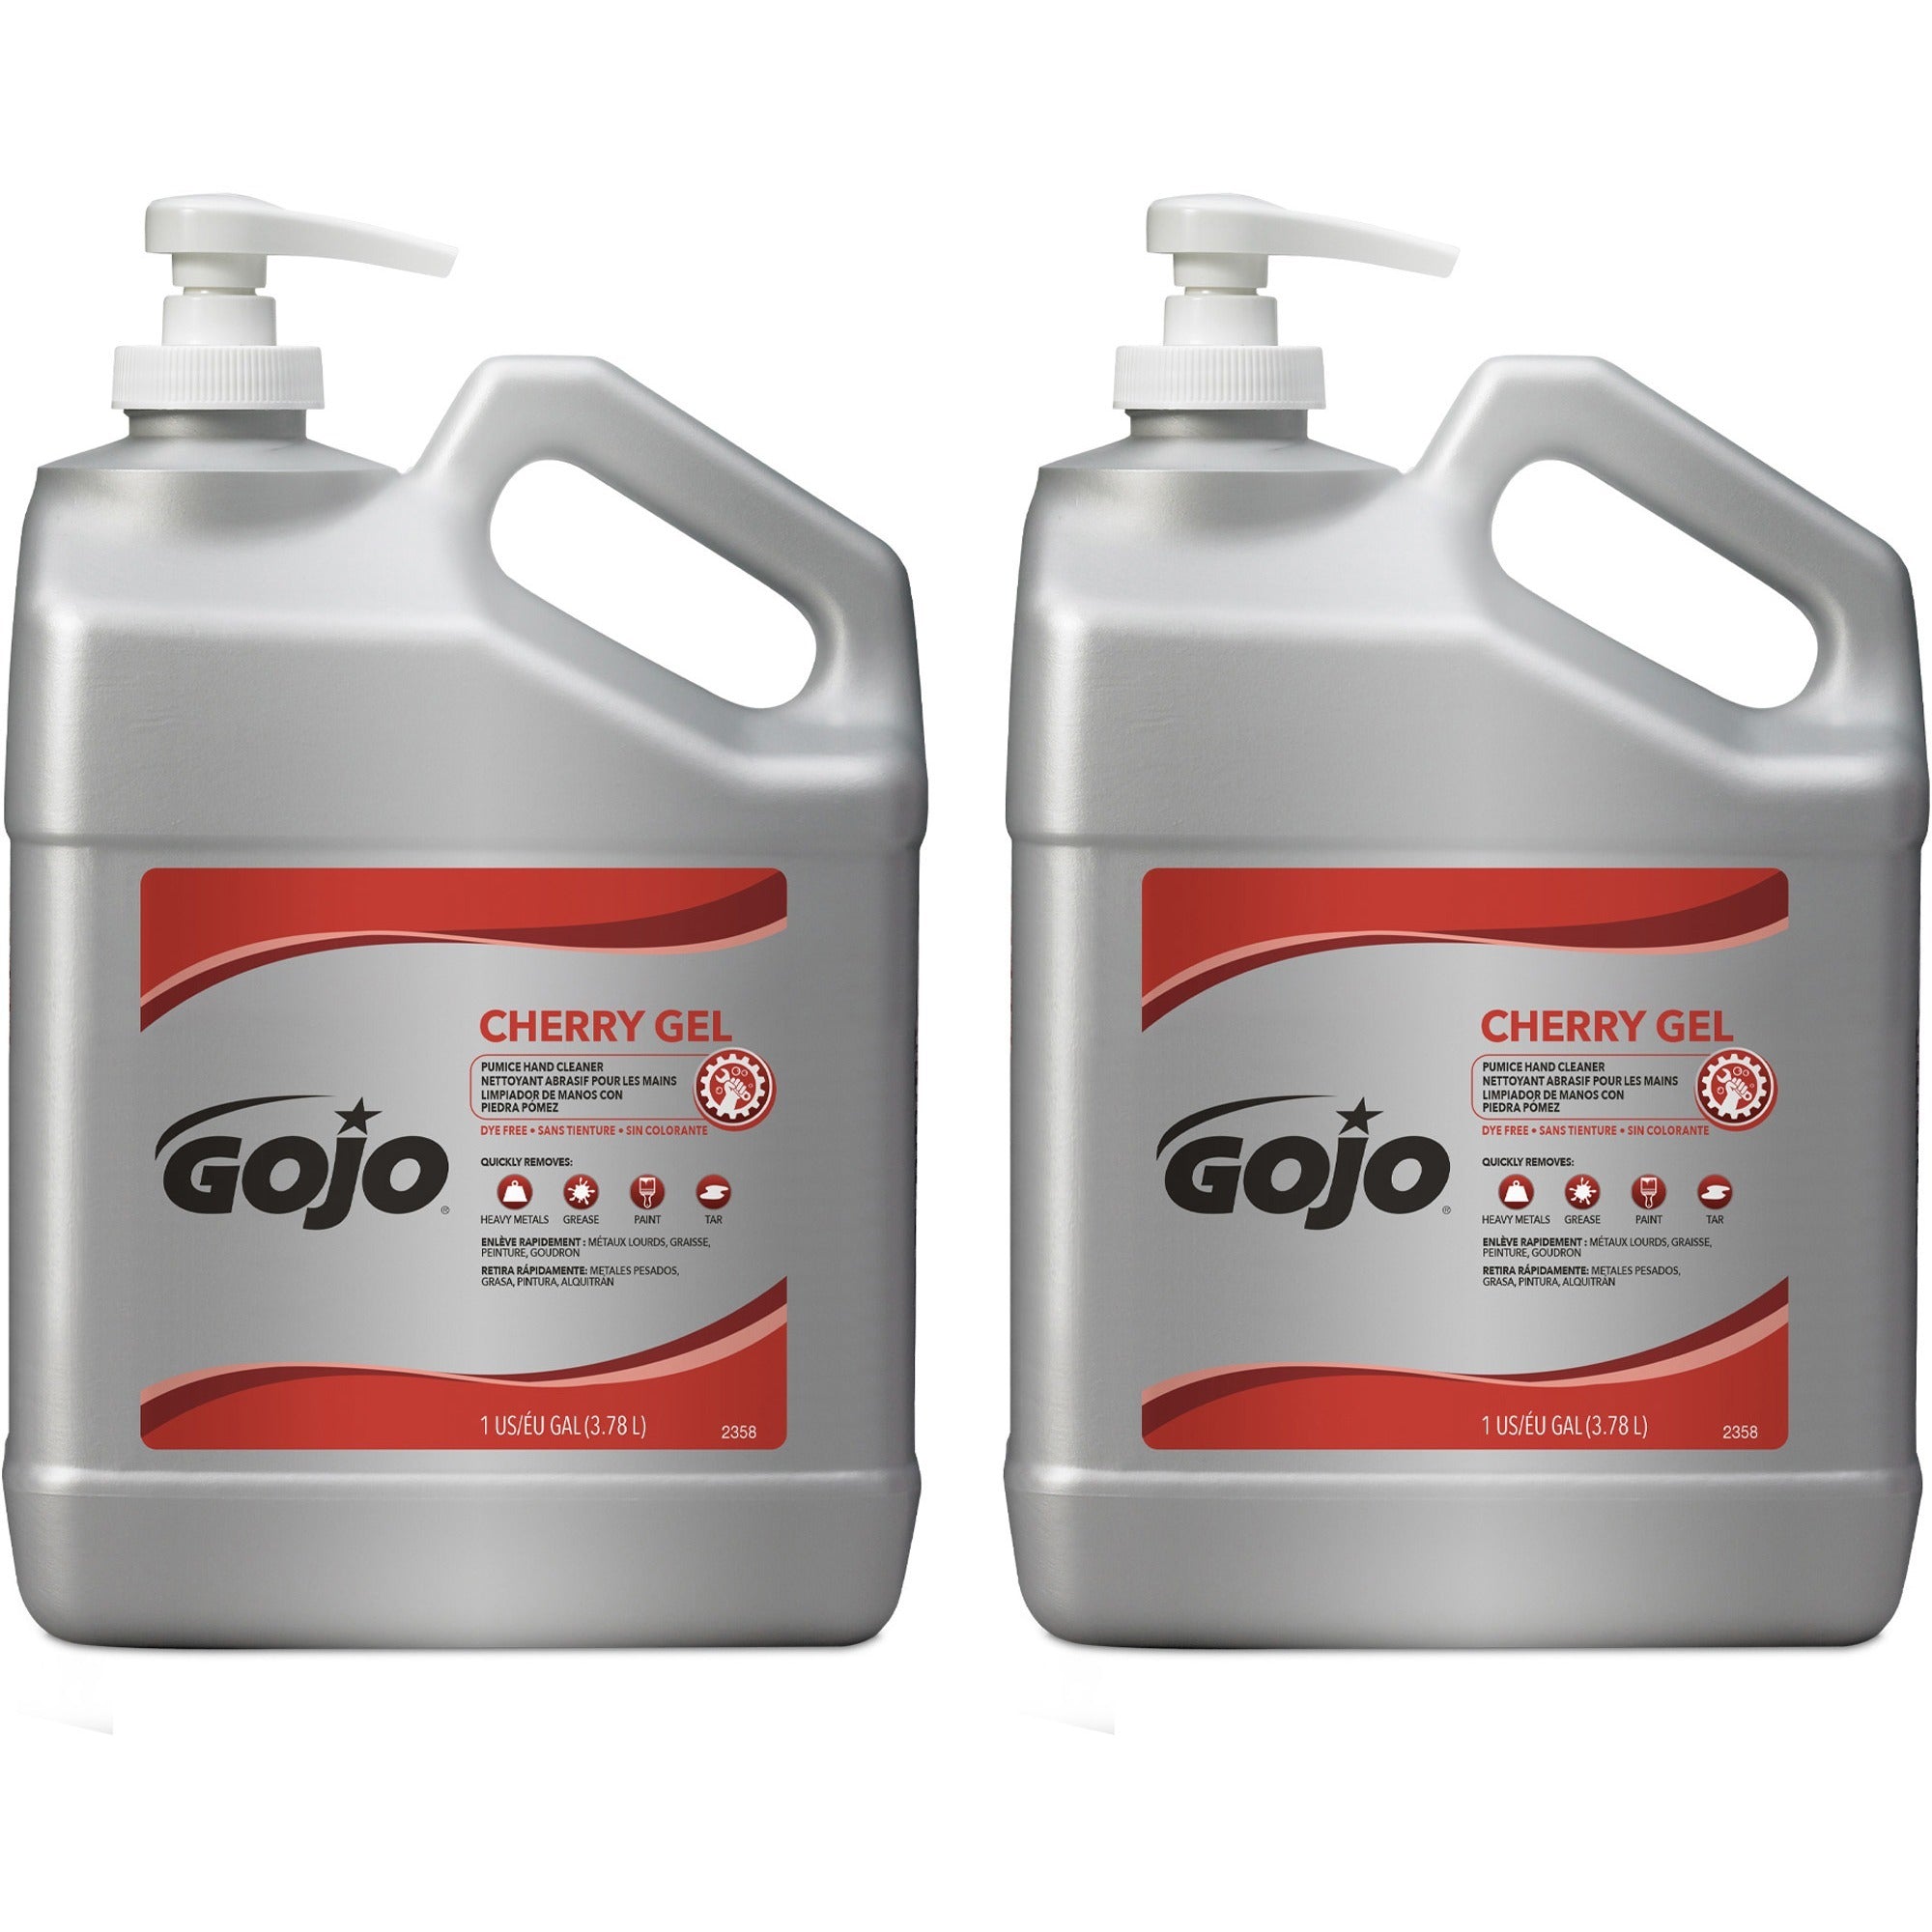 gojo-cherry-gel-pumice-hand-cleaner-cherry-scentfor-1-gal-38-l-pump-bottle-dispenser-dirt-remover-oil-remover-grease-remover-paint-remover-tar-remover-hand-skin-heavy-duty-ph-balanced-pleasant-scent-2-carton_goj235802ct - 1